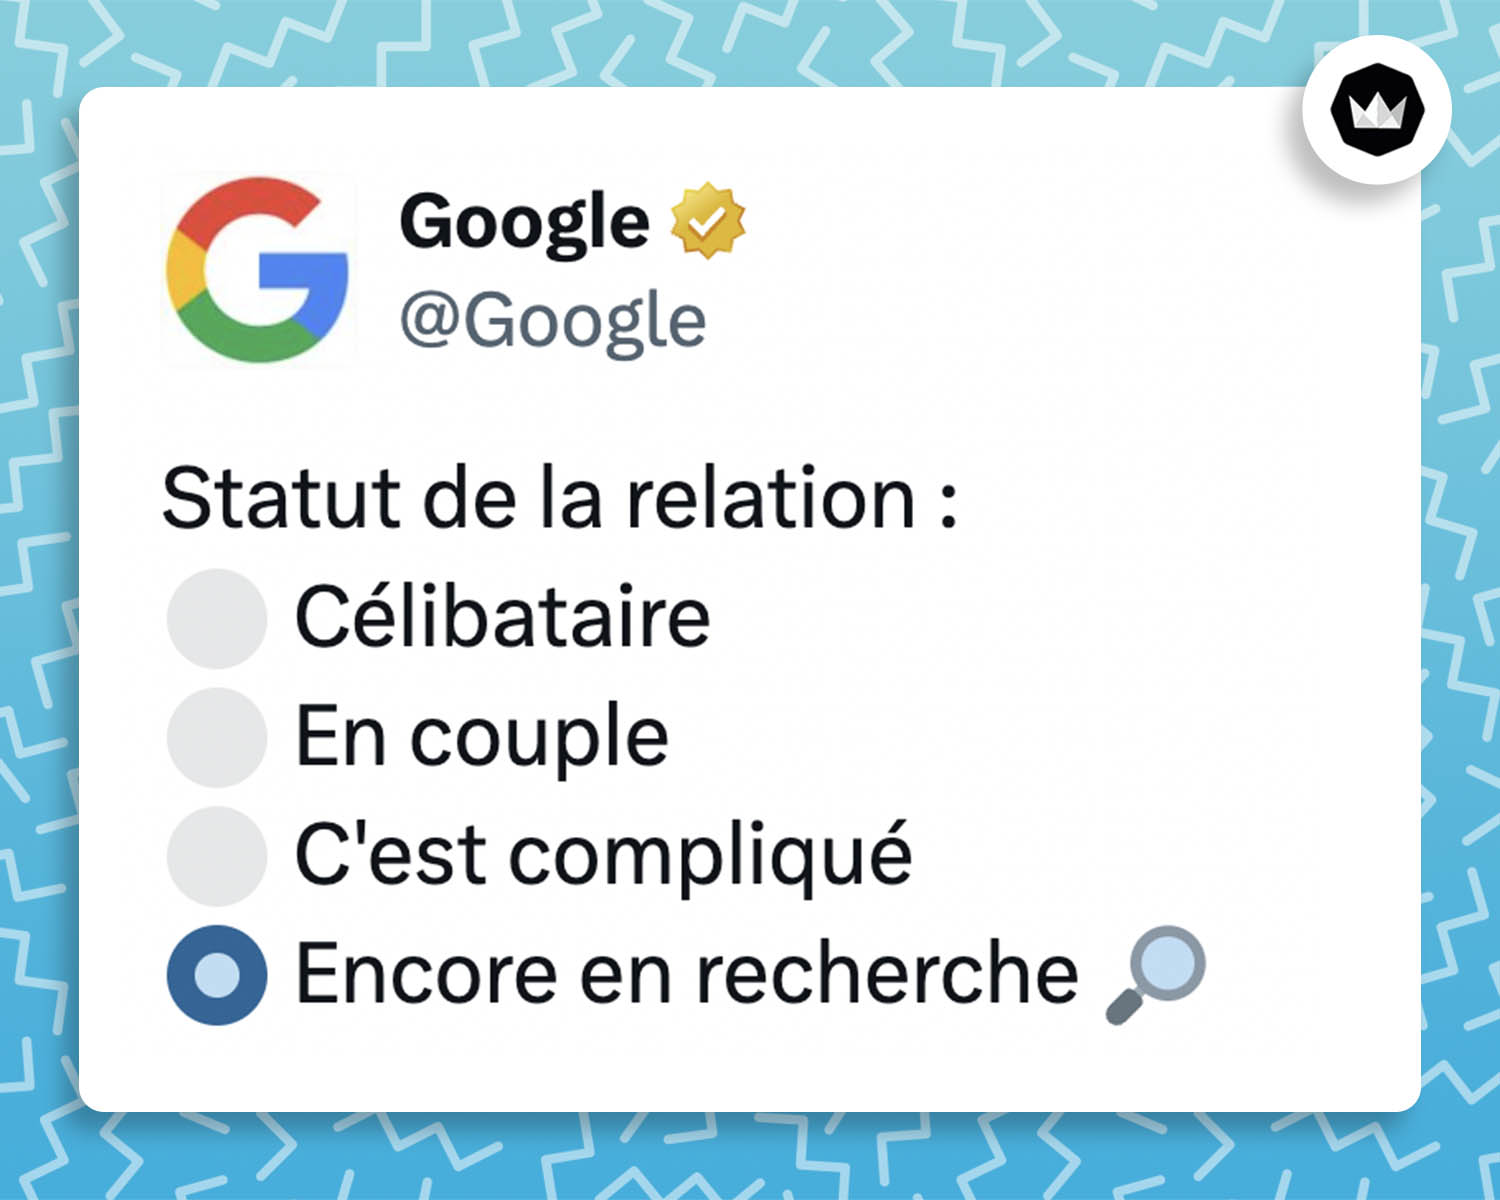 tweet de Google : 
Statut de la relation:
• Célibataire
• En couple
• C’est compliqué
• Encore en recherche